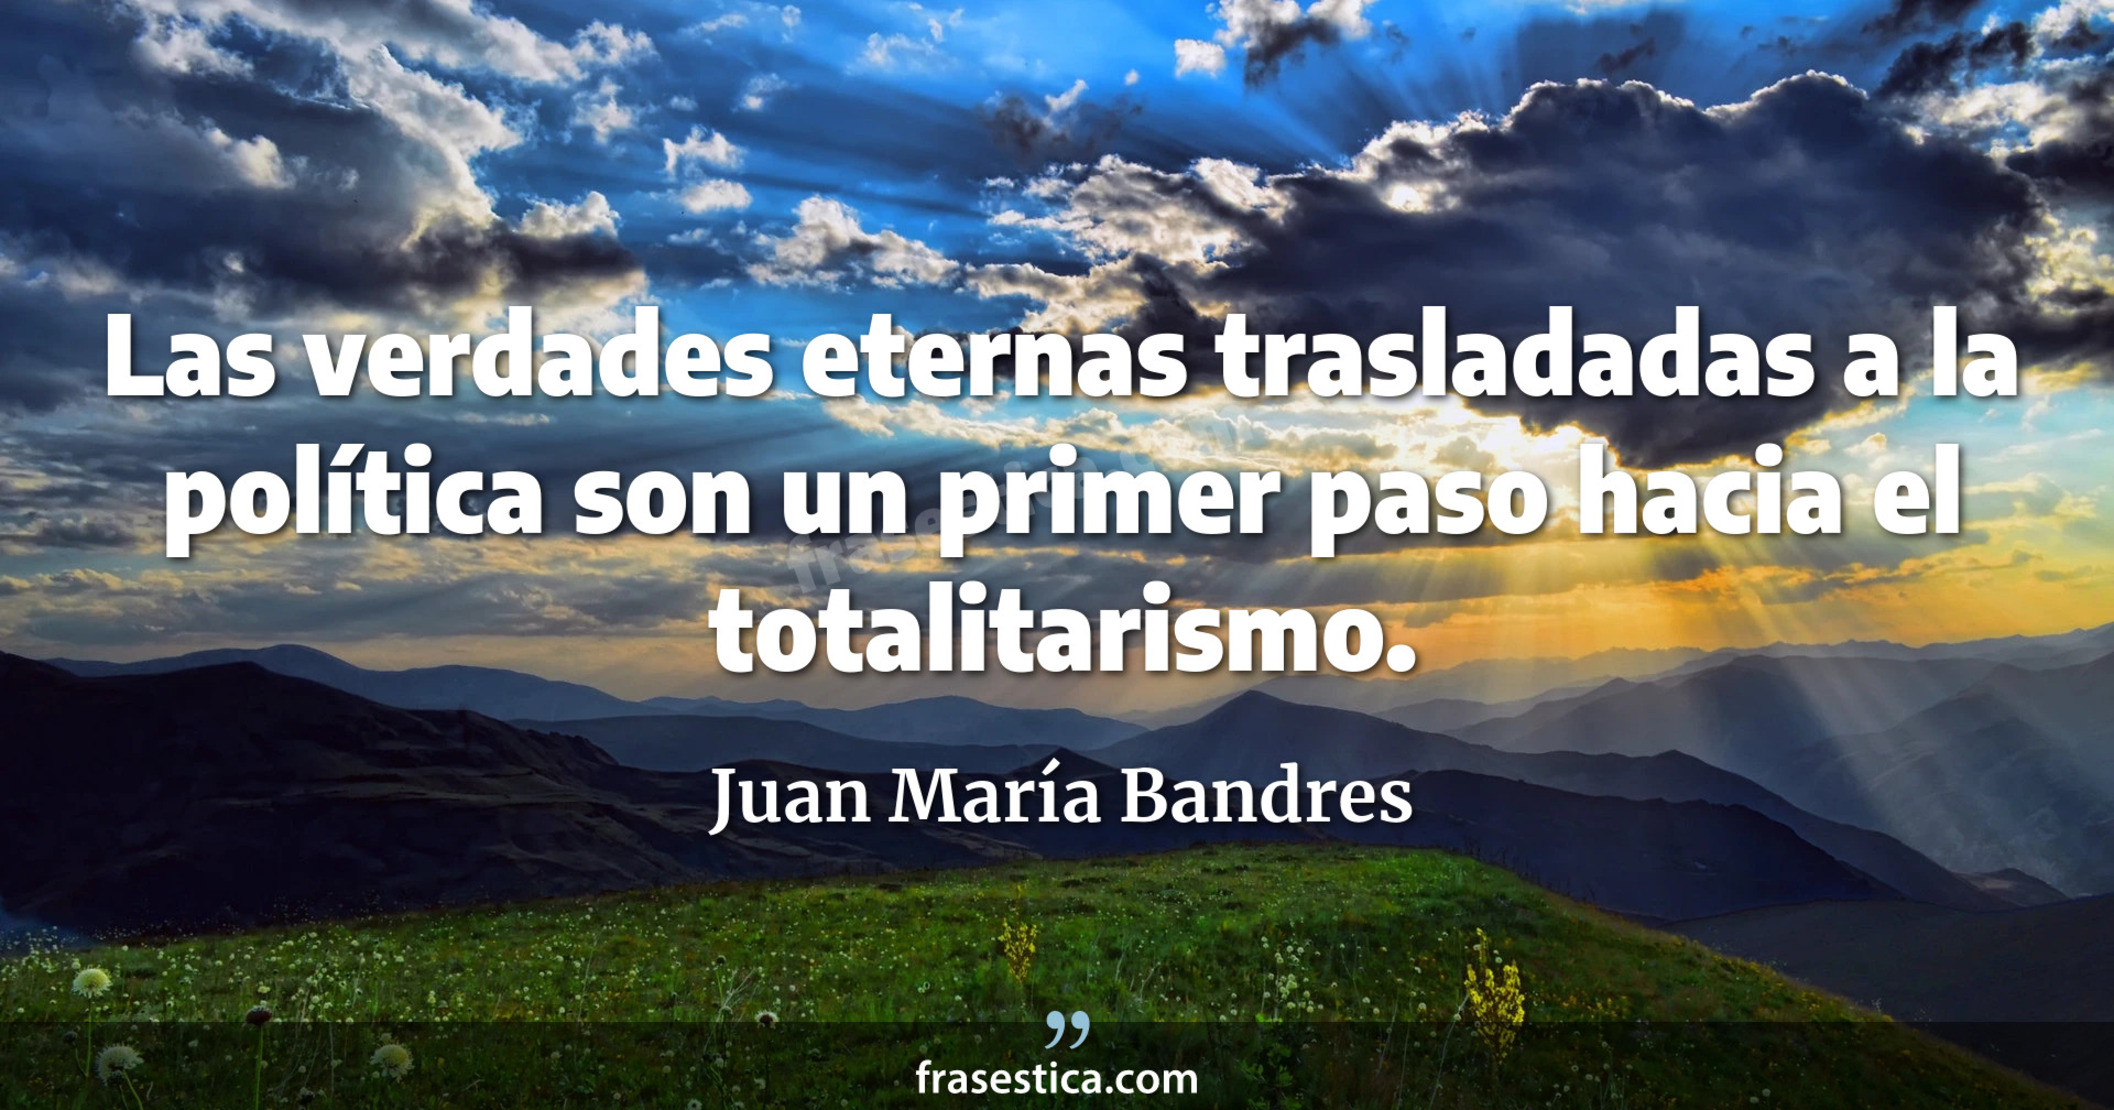 Las verdades eternas trasladadas a la política son un primer paso hacia el totalitarismo. - Juan María Bandres